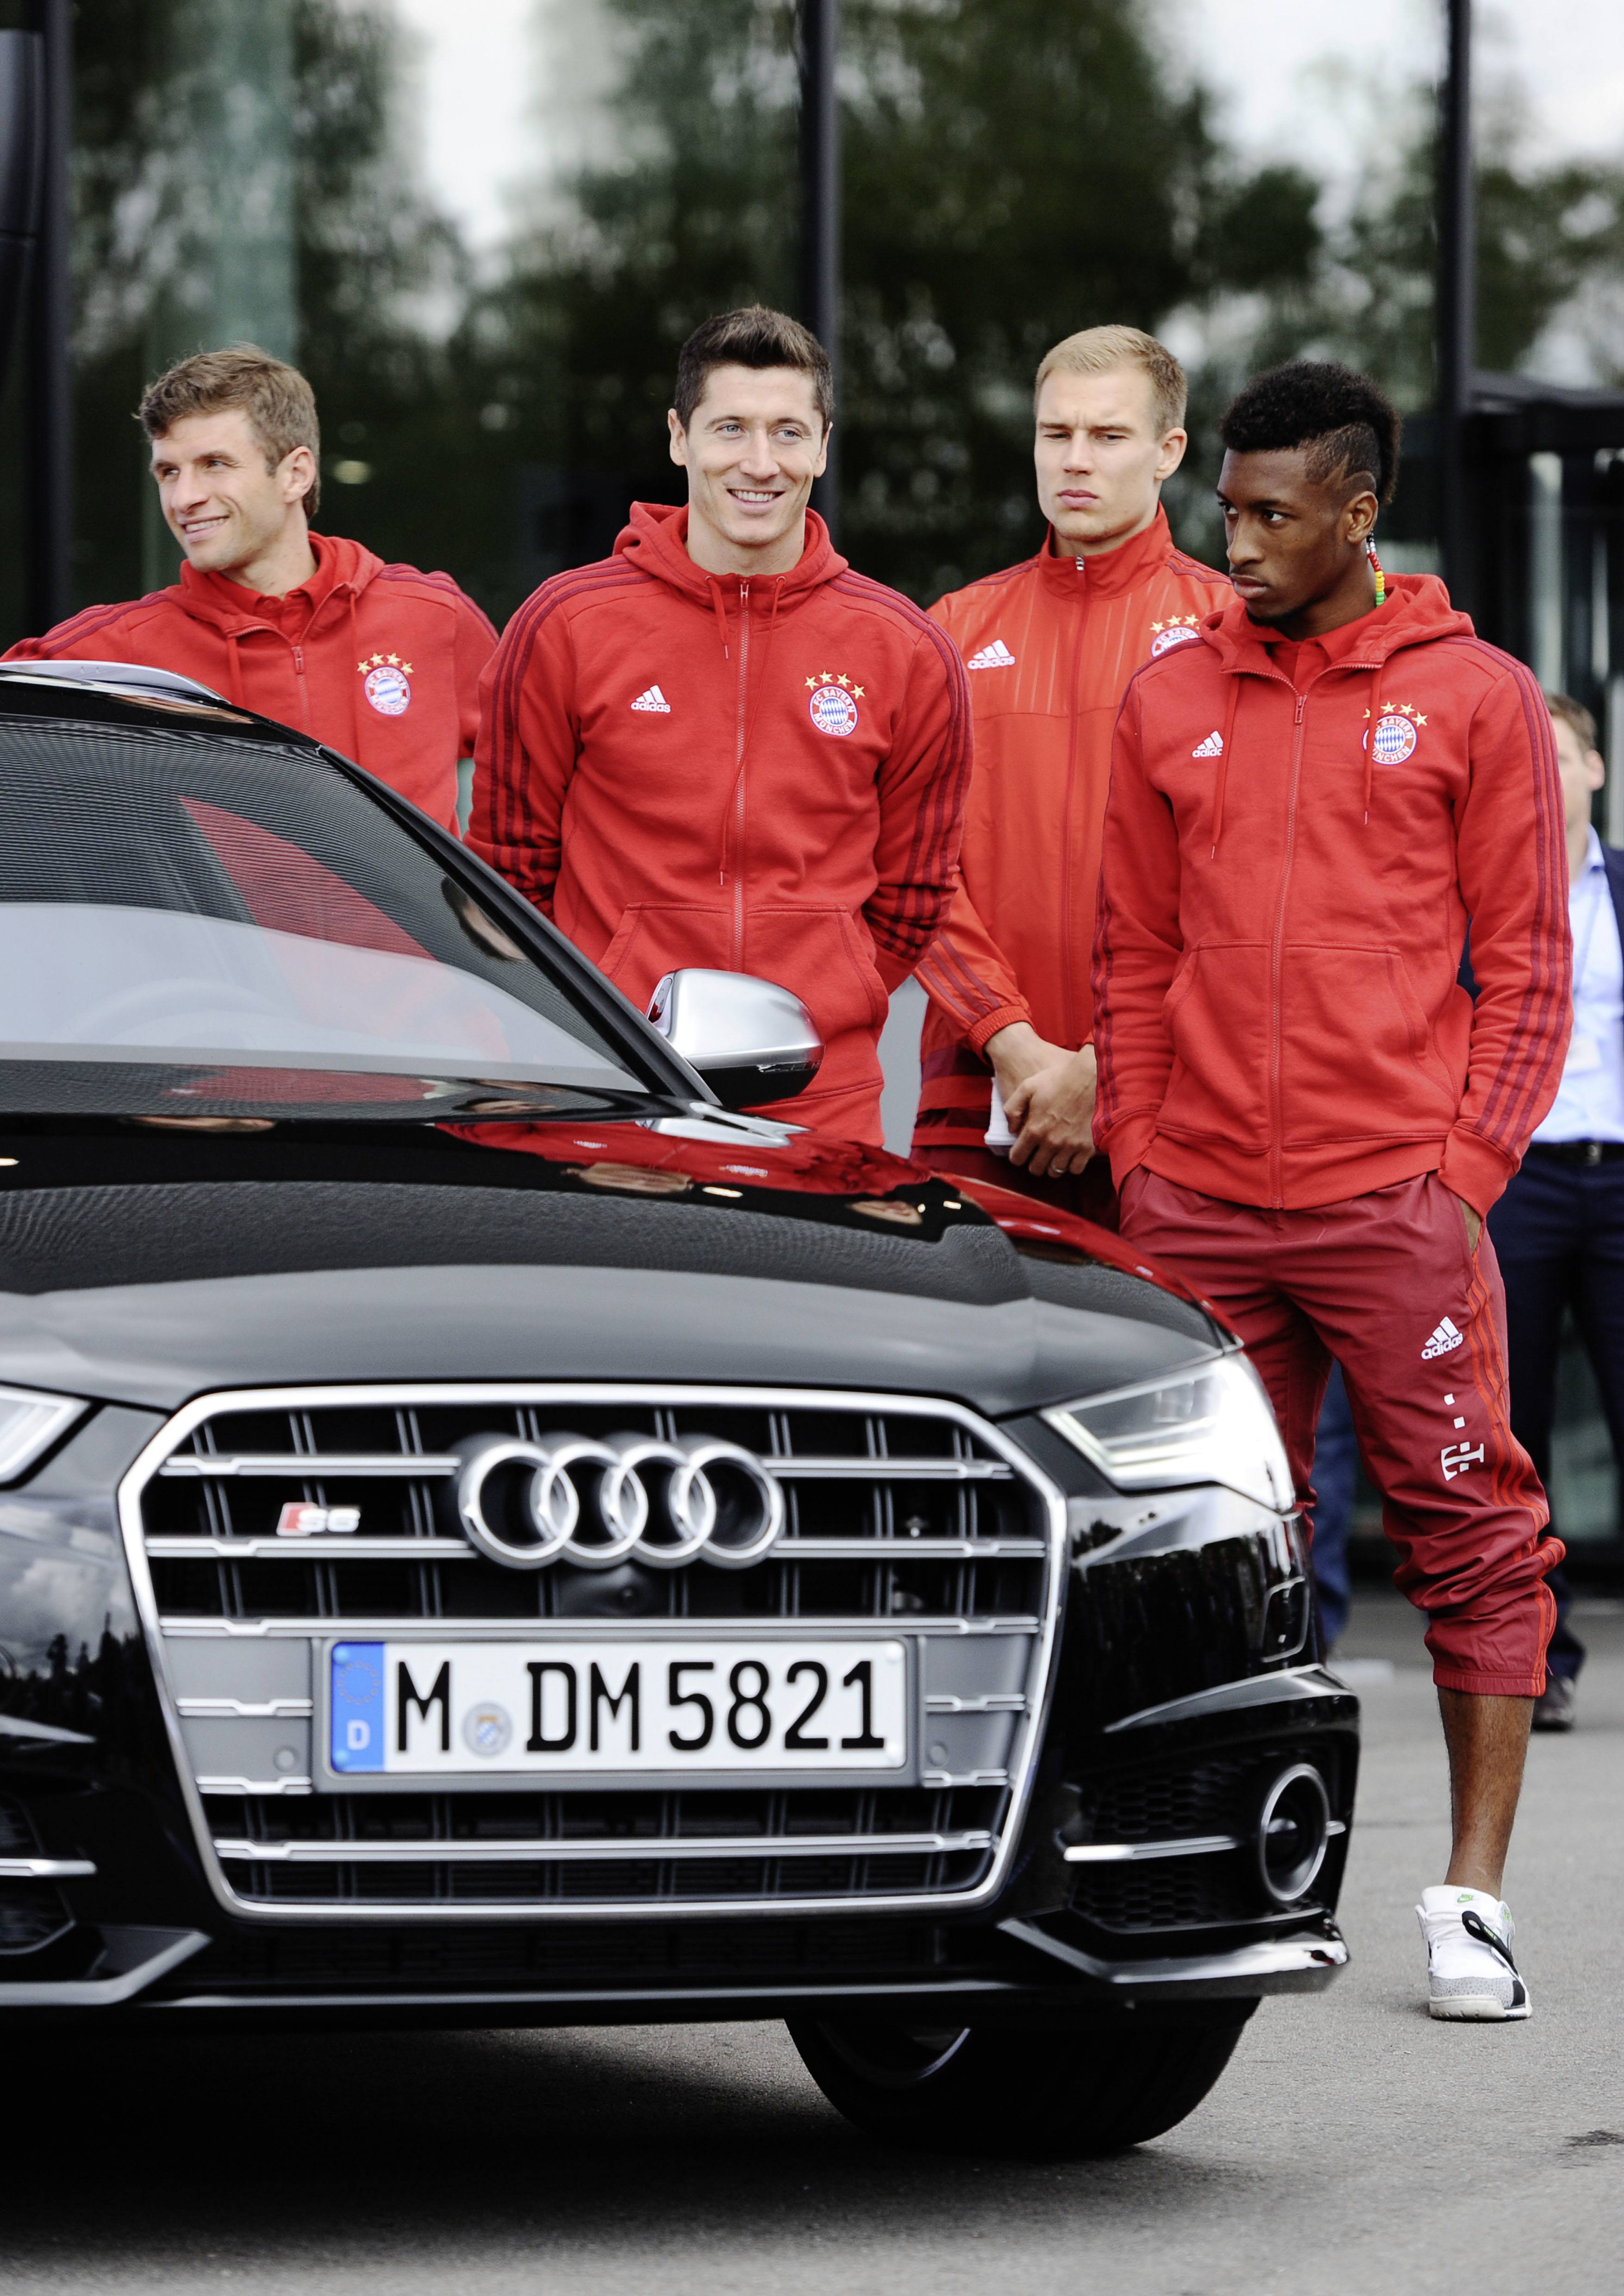 Piłkarze FC Bayern Monachium otrzymali swoje oficjalne samochody